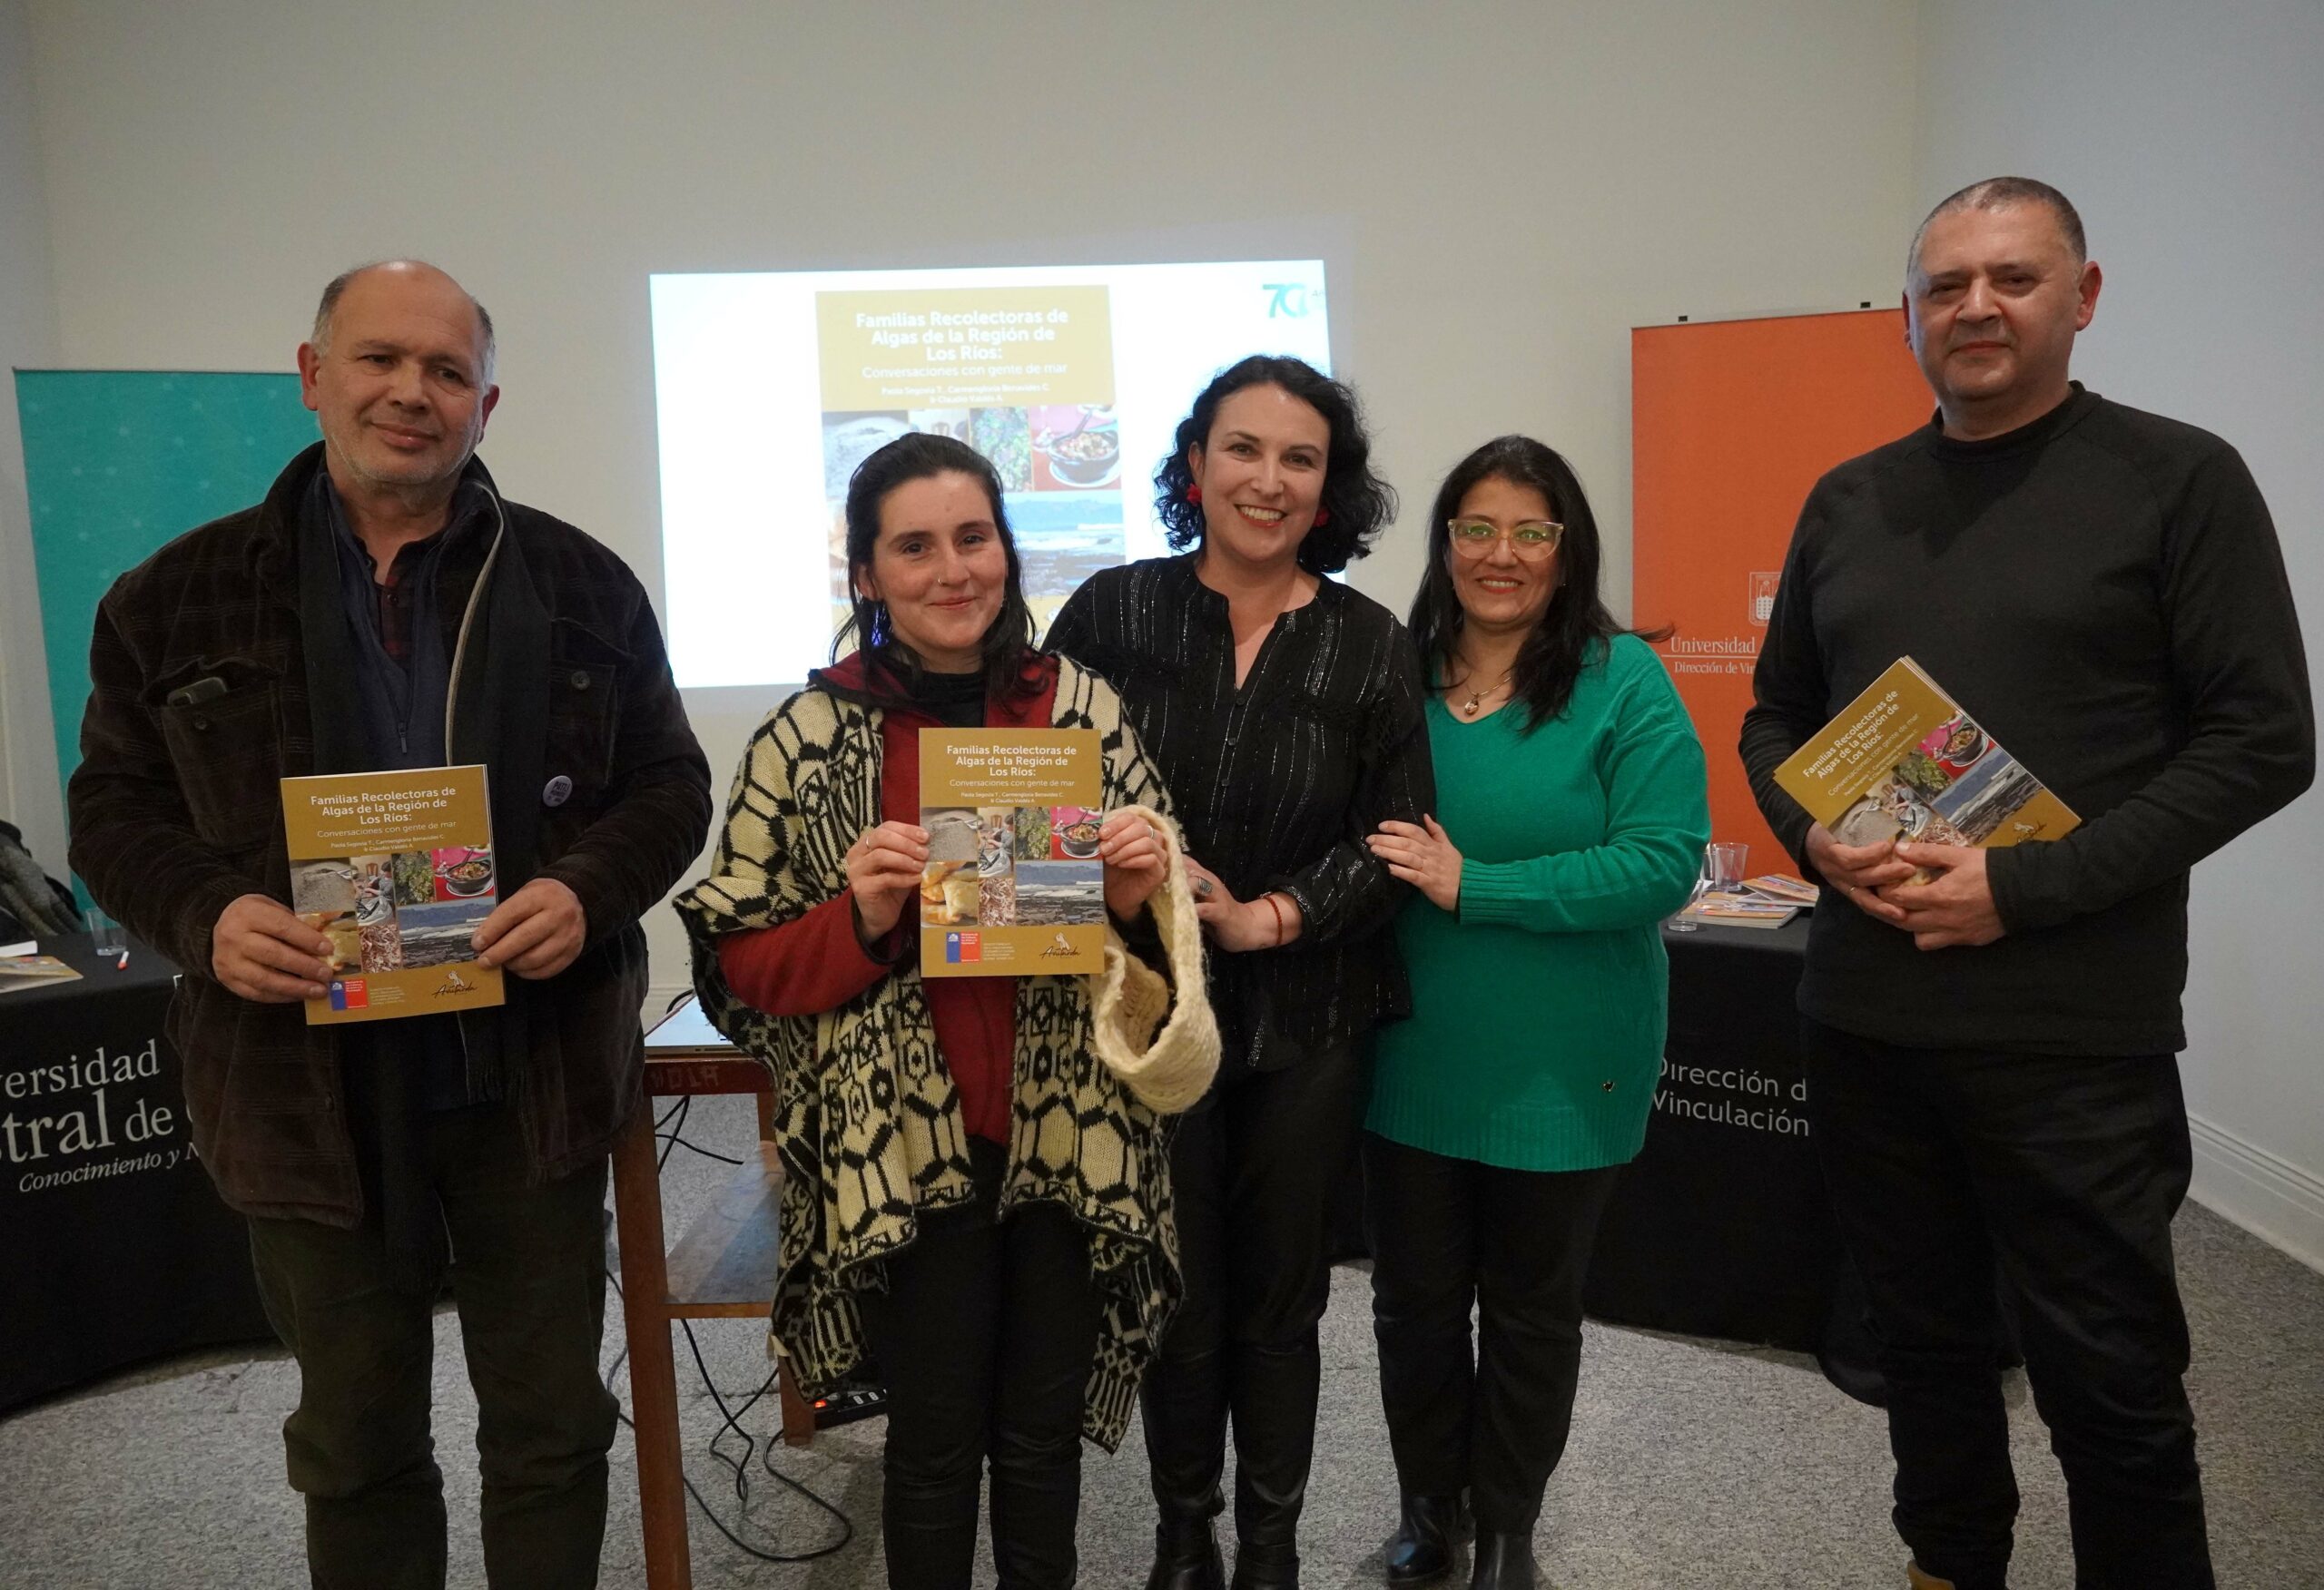 El libro fue escrito por los periodistas y Alumni UACh Paola Segovia Tamayo, Carmengloria Benavides Cáceres y Claudio Valdés Agüero.